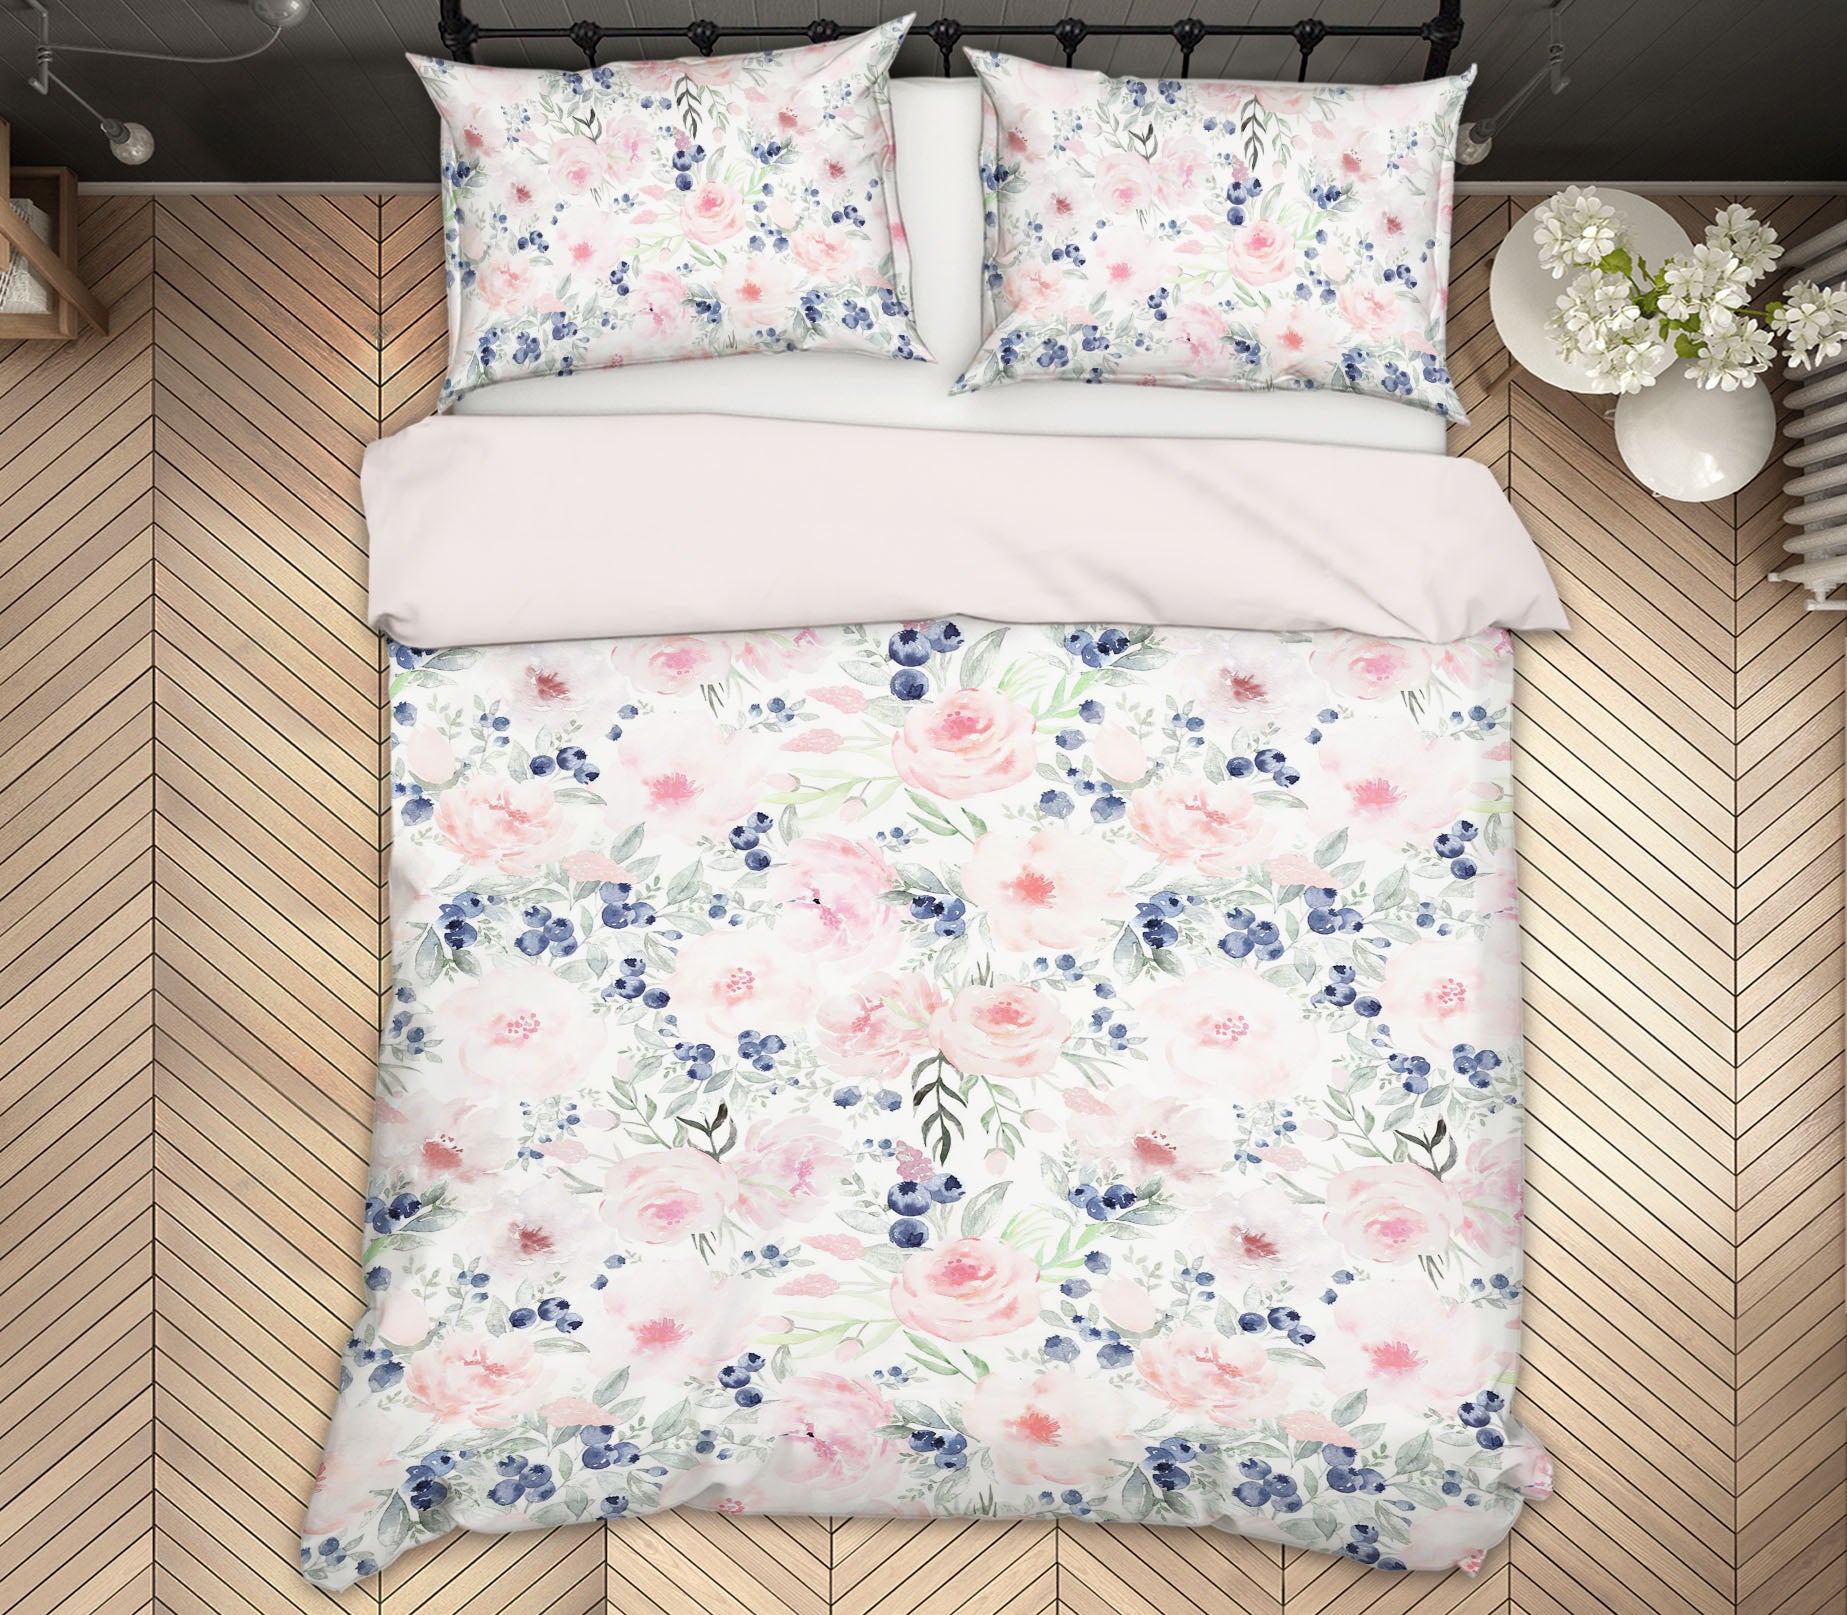 3D Blueberry Pink Flower 102 Uta Naumann Bedding Bed Pillowcases Quilt